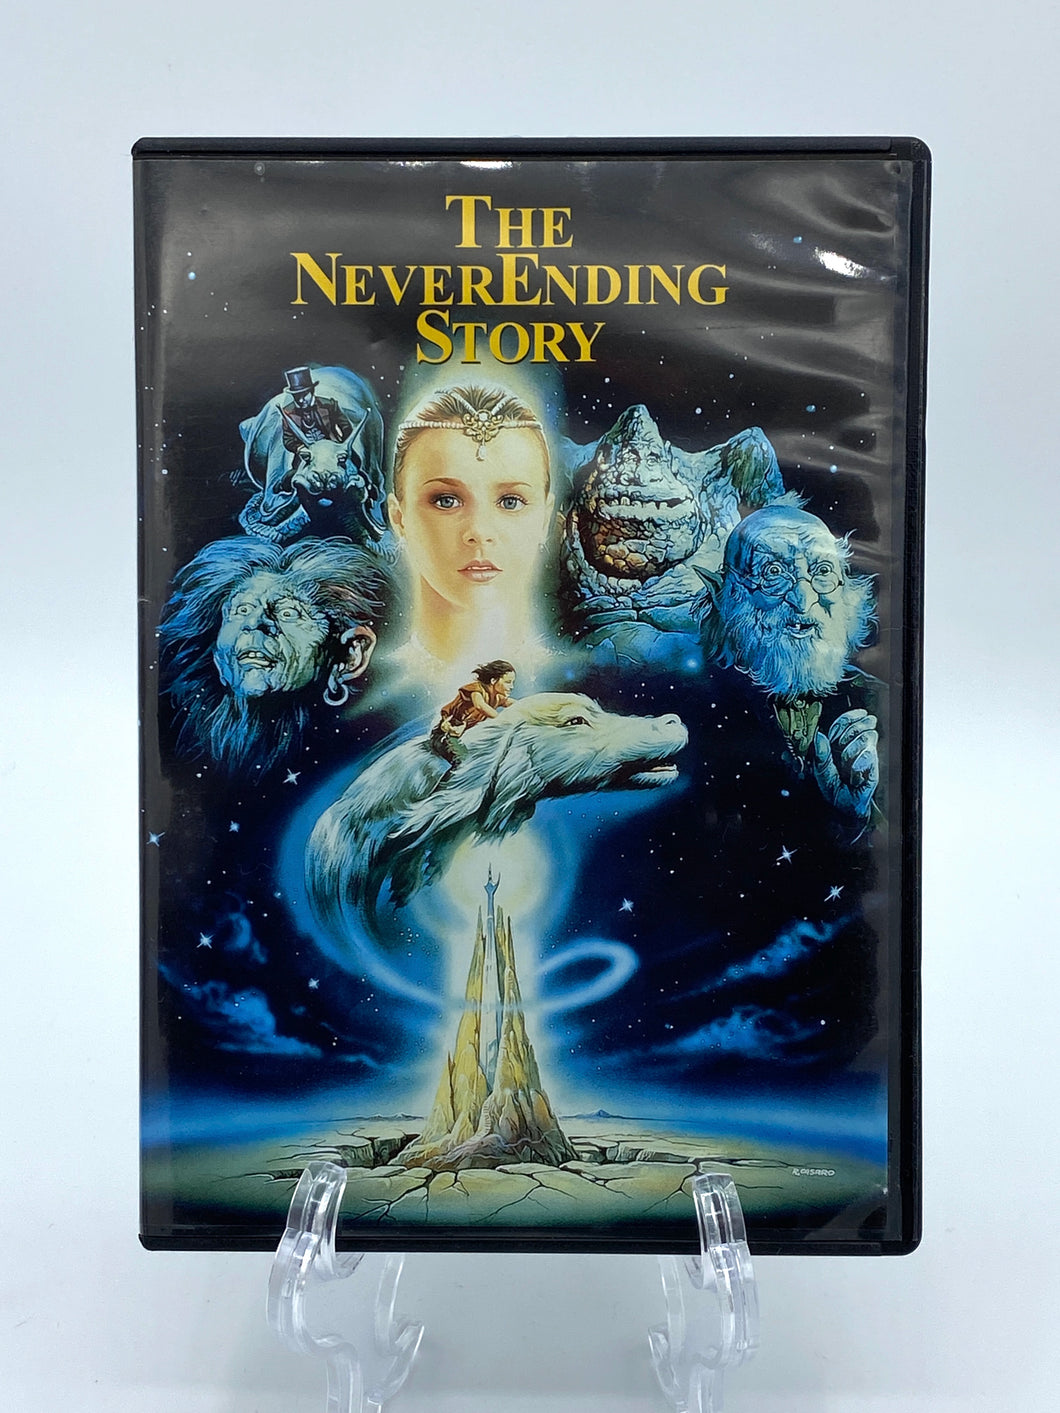 The NeverEnding Story (DVD)